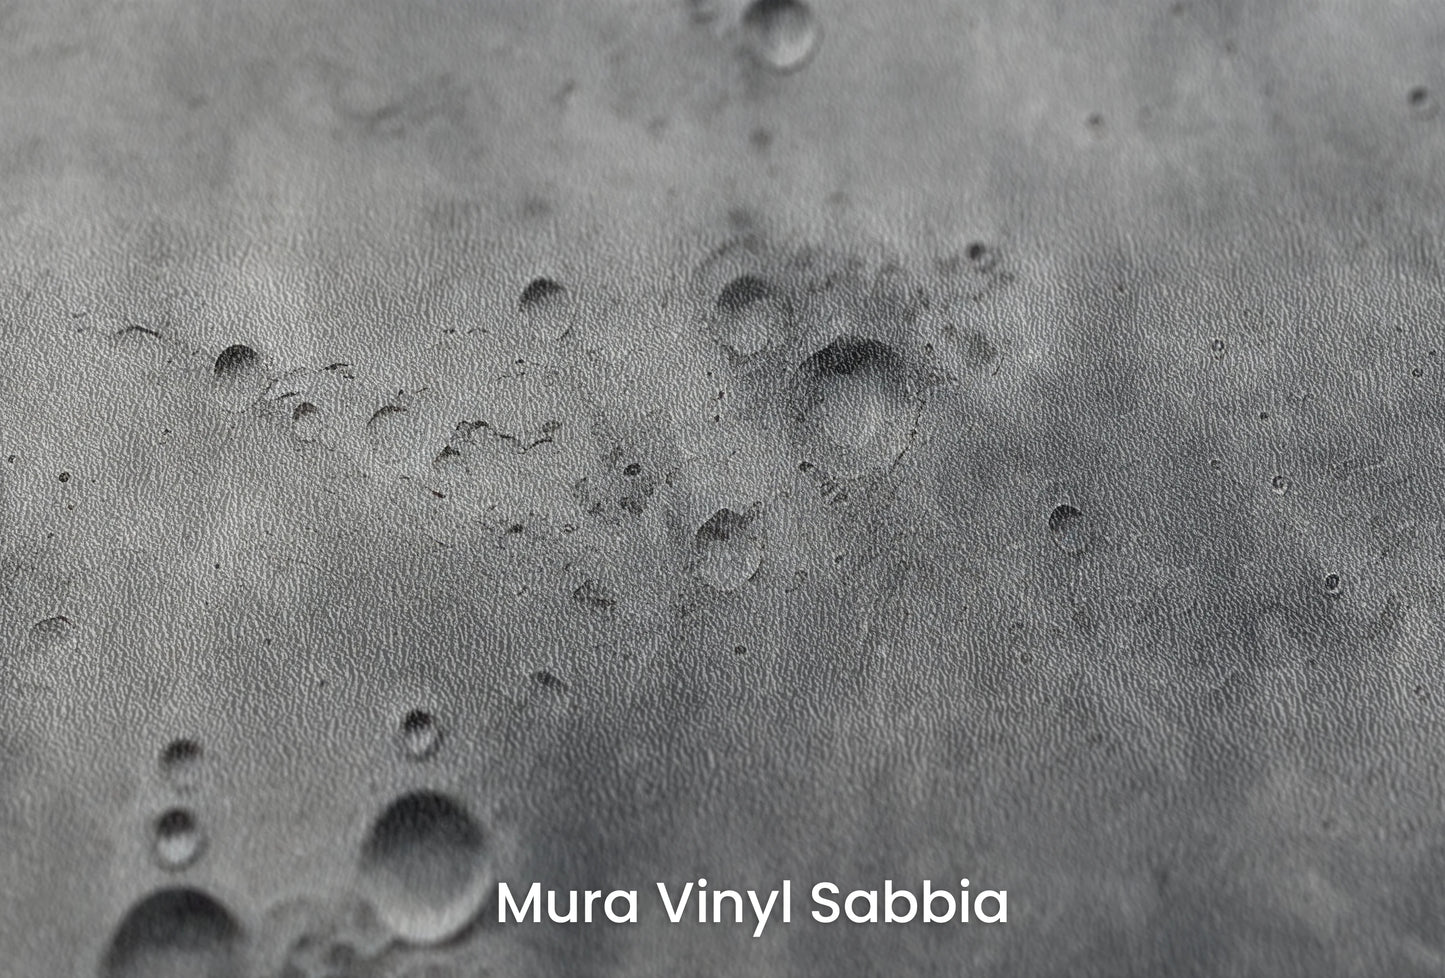 Zbliżenie na artystyczną fototapetę o nazwie Lunar Surface na podłożu Mura Vinyl Sabbia struktura grubego ziarna piasku.